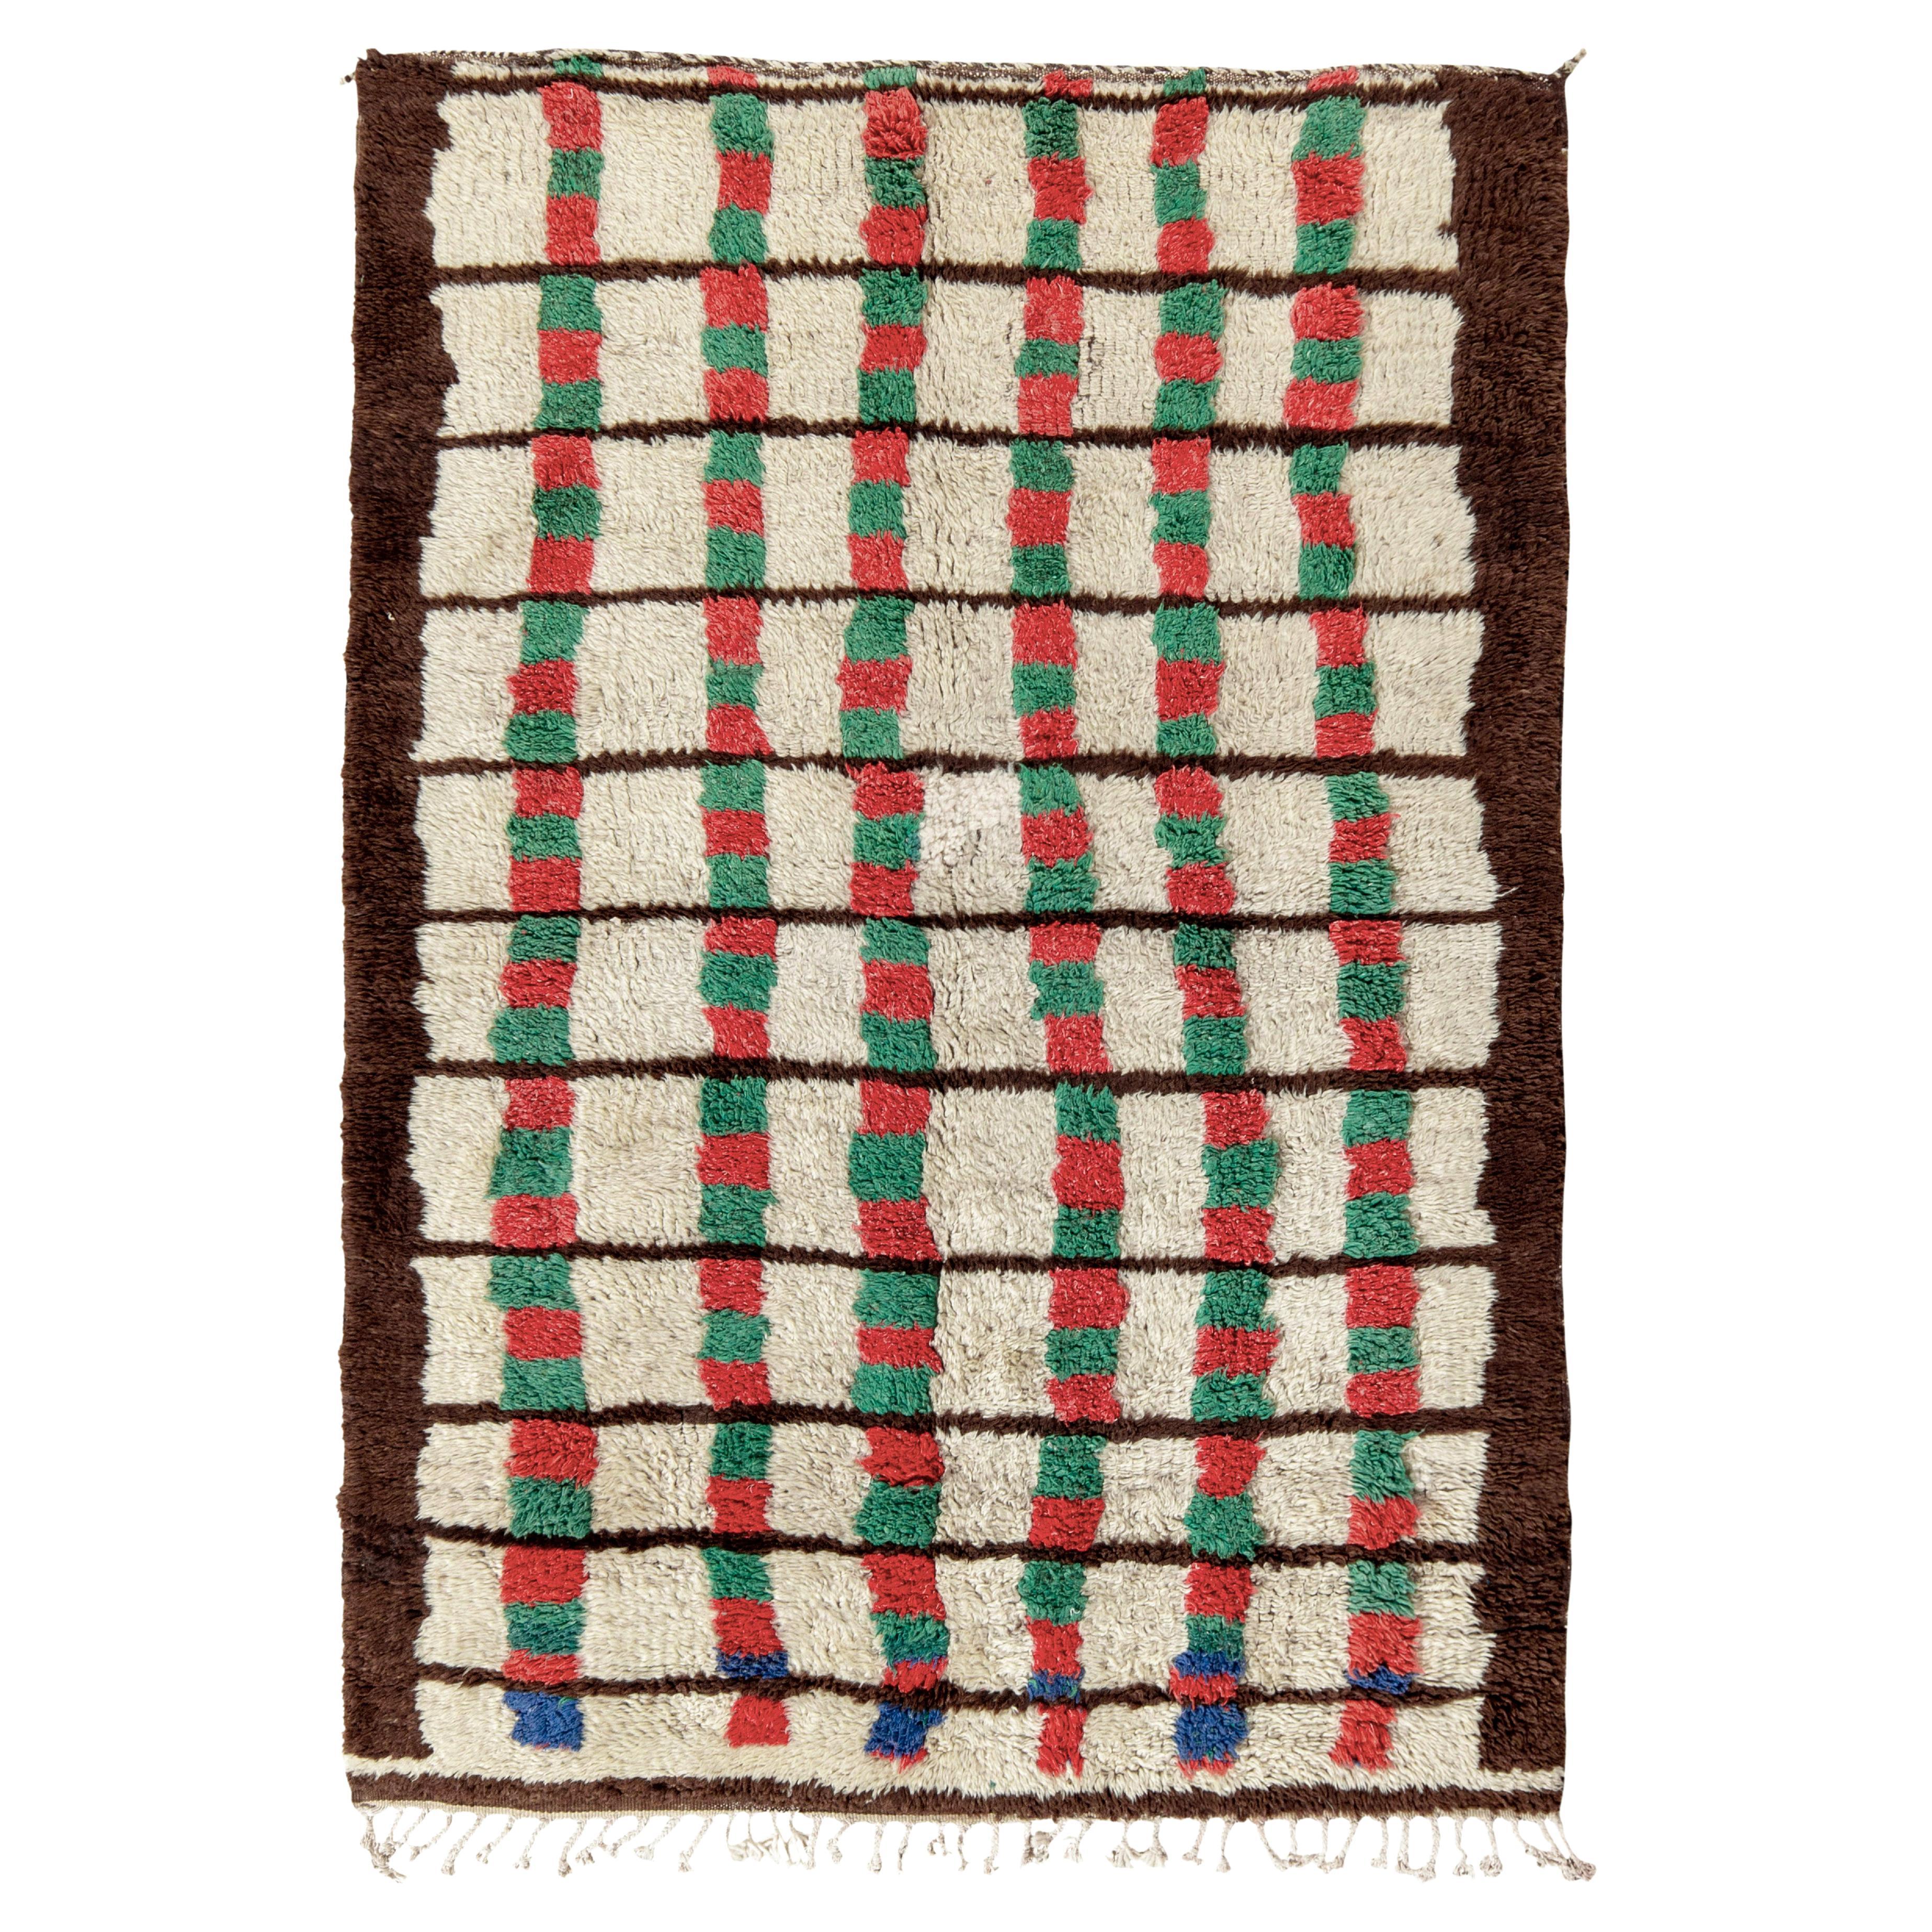 Vintage Berber Moroccan Rug in Beige-Brown, Geometric Pattern by Rug & Kilim For Sale